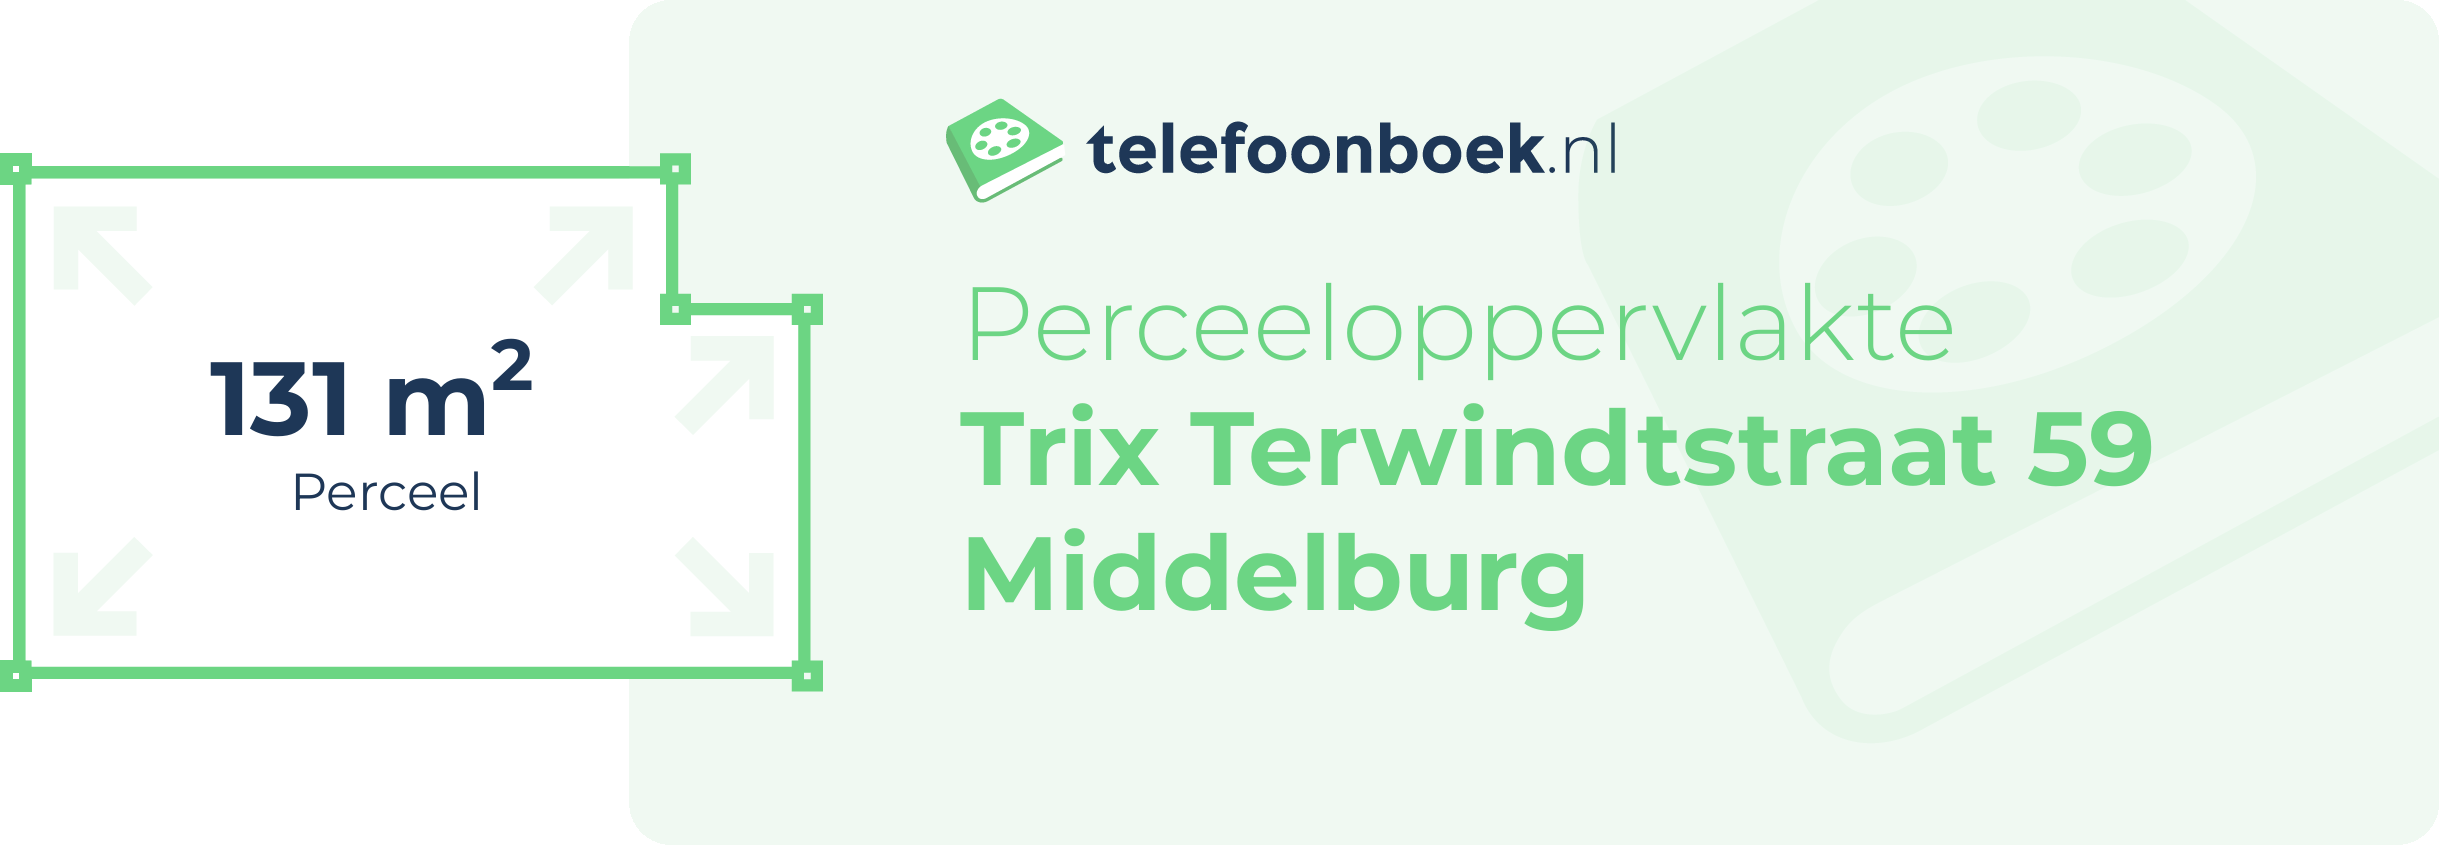 Perceeloppervlakte Trix Terwindtstraat 59 Middelburg